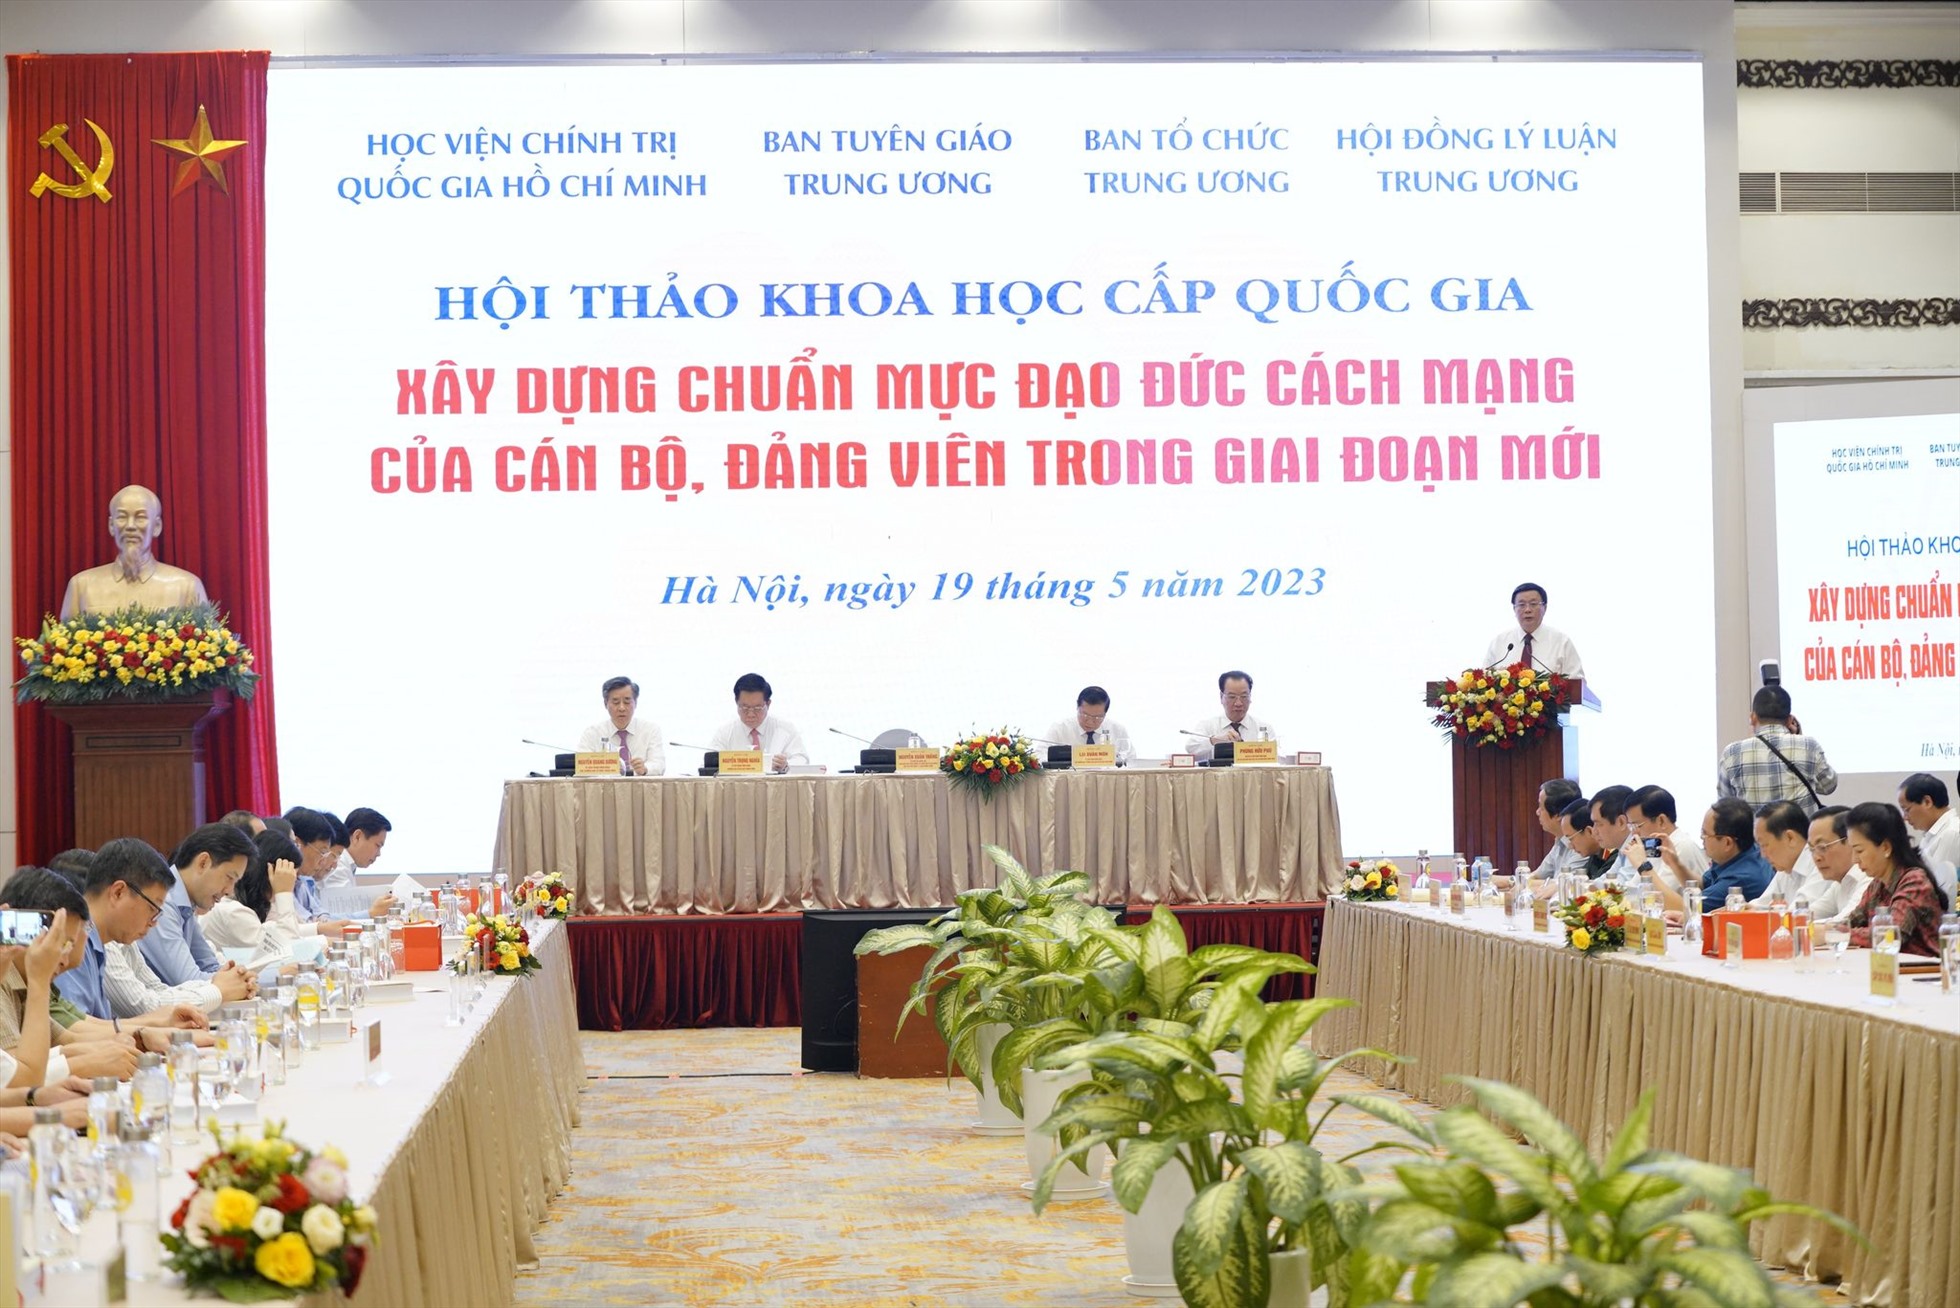 Hội thảo diễn ra vào ngày 19.5 tại Hà Nội. Ảnh: Trần Vương